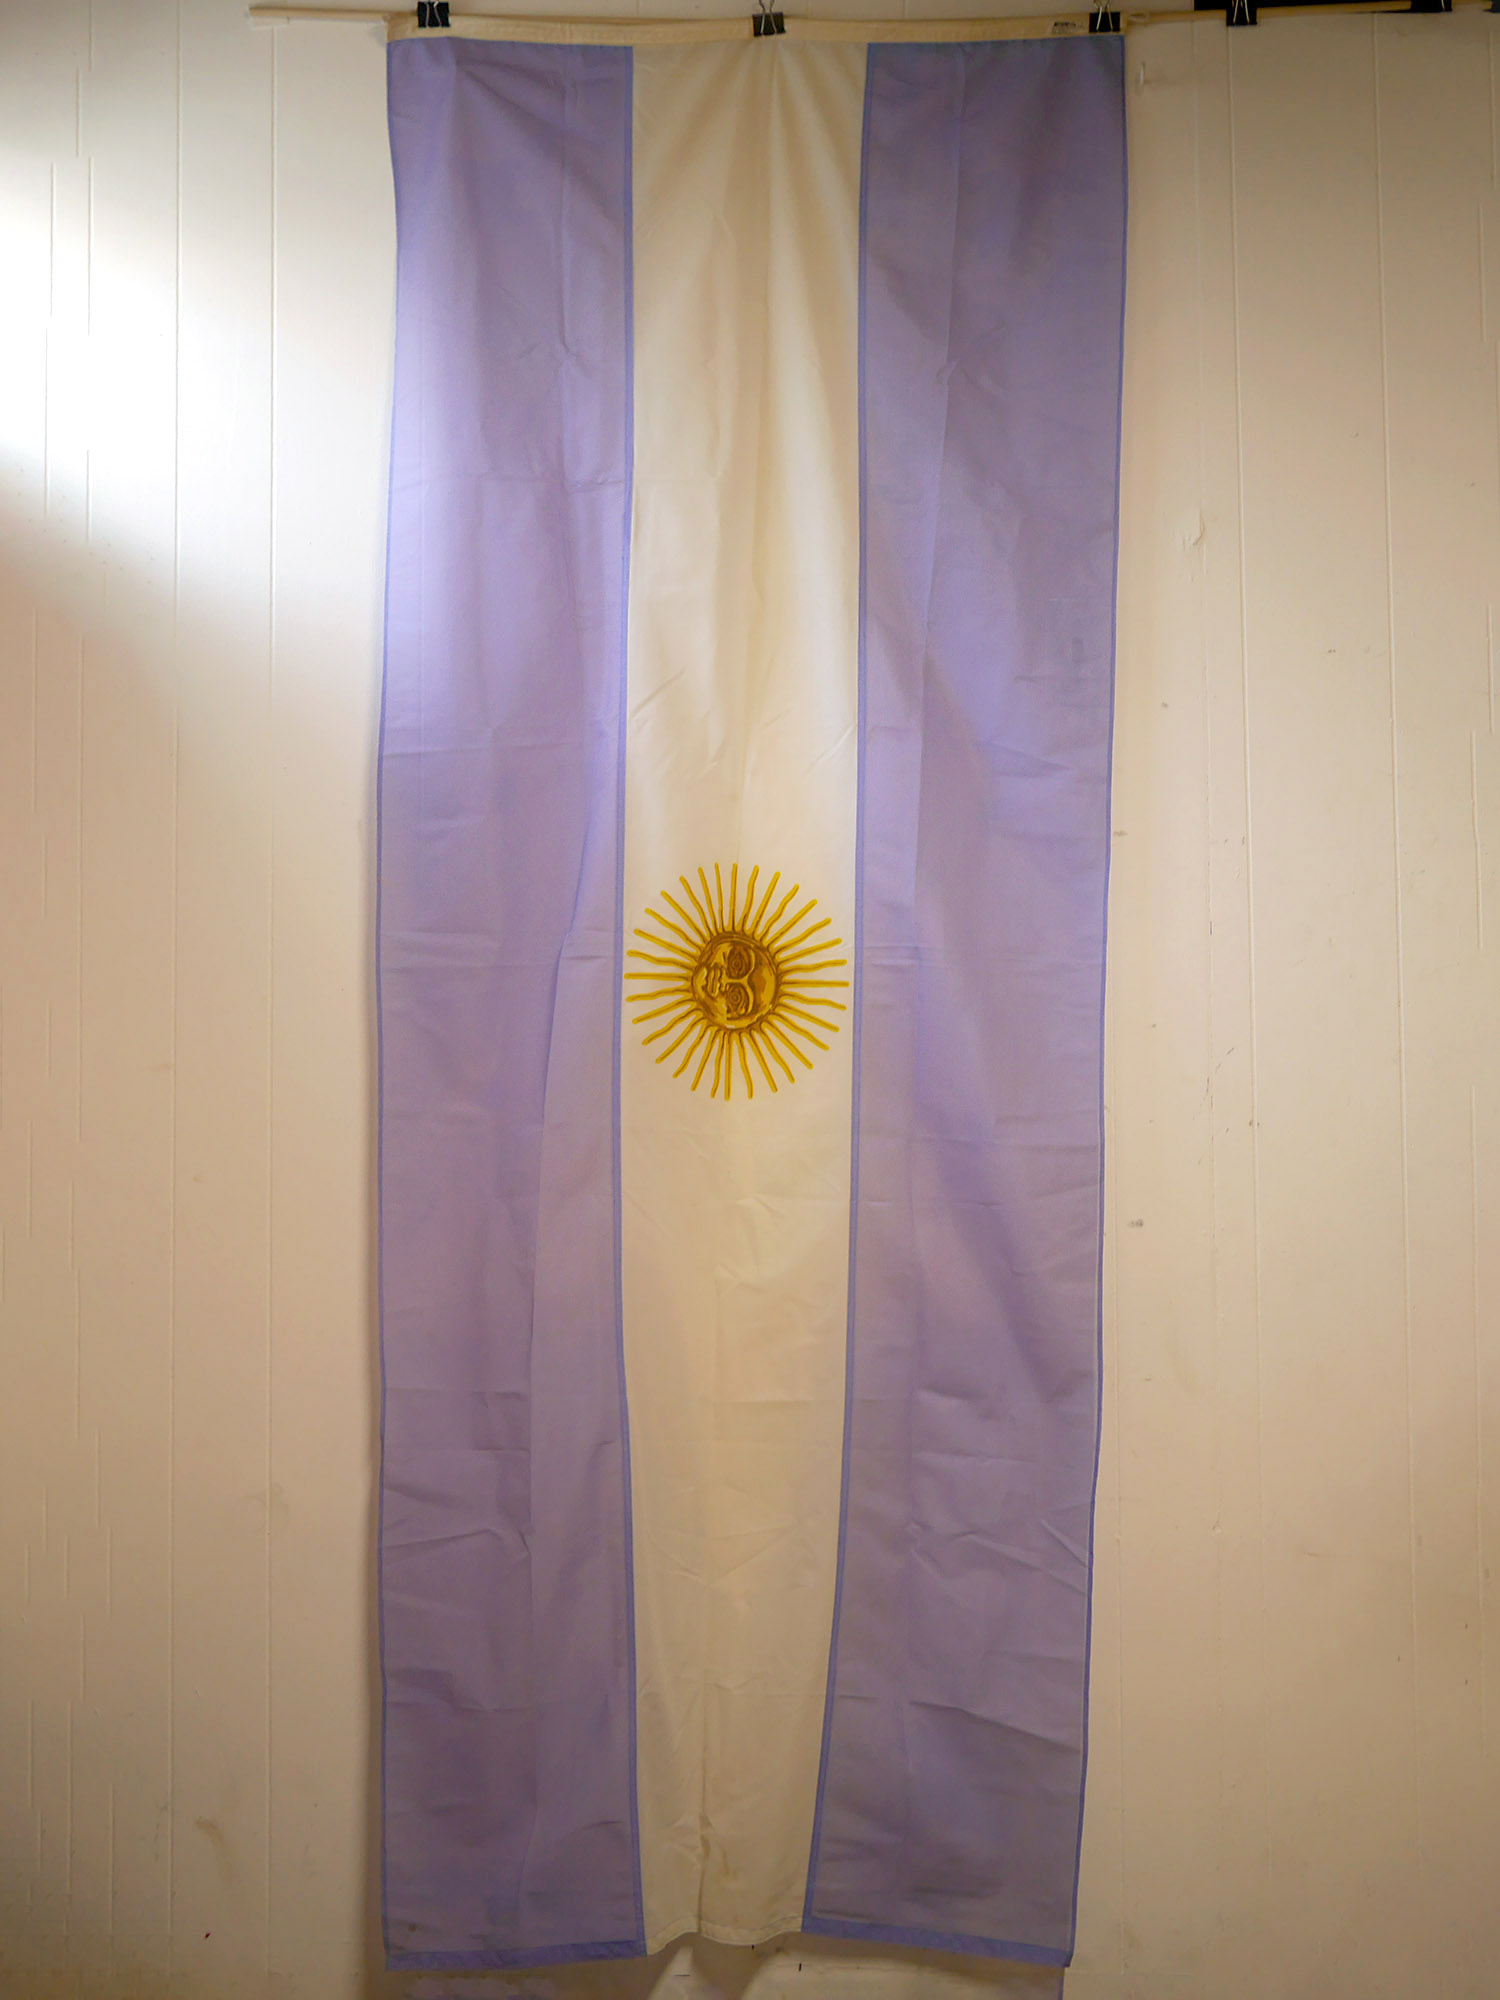 argentina3